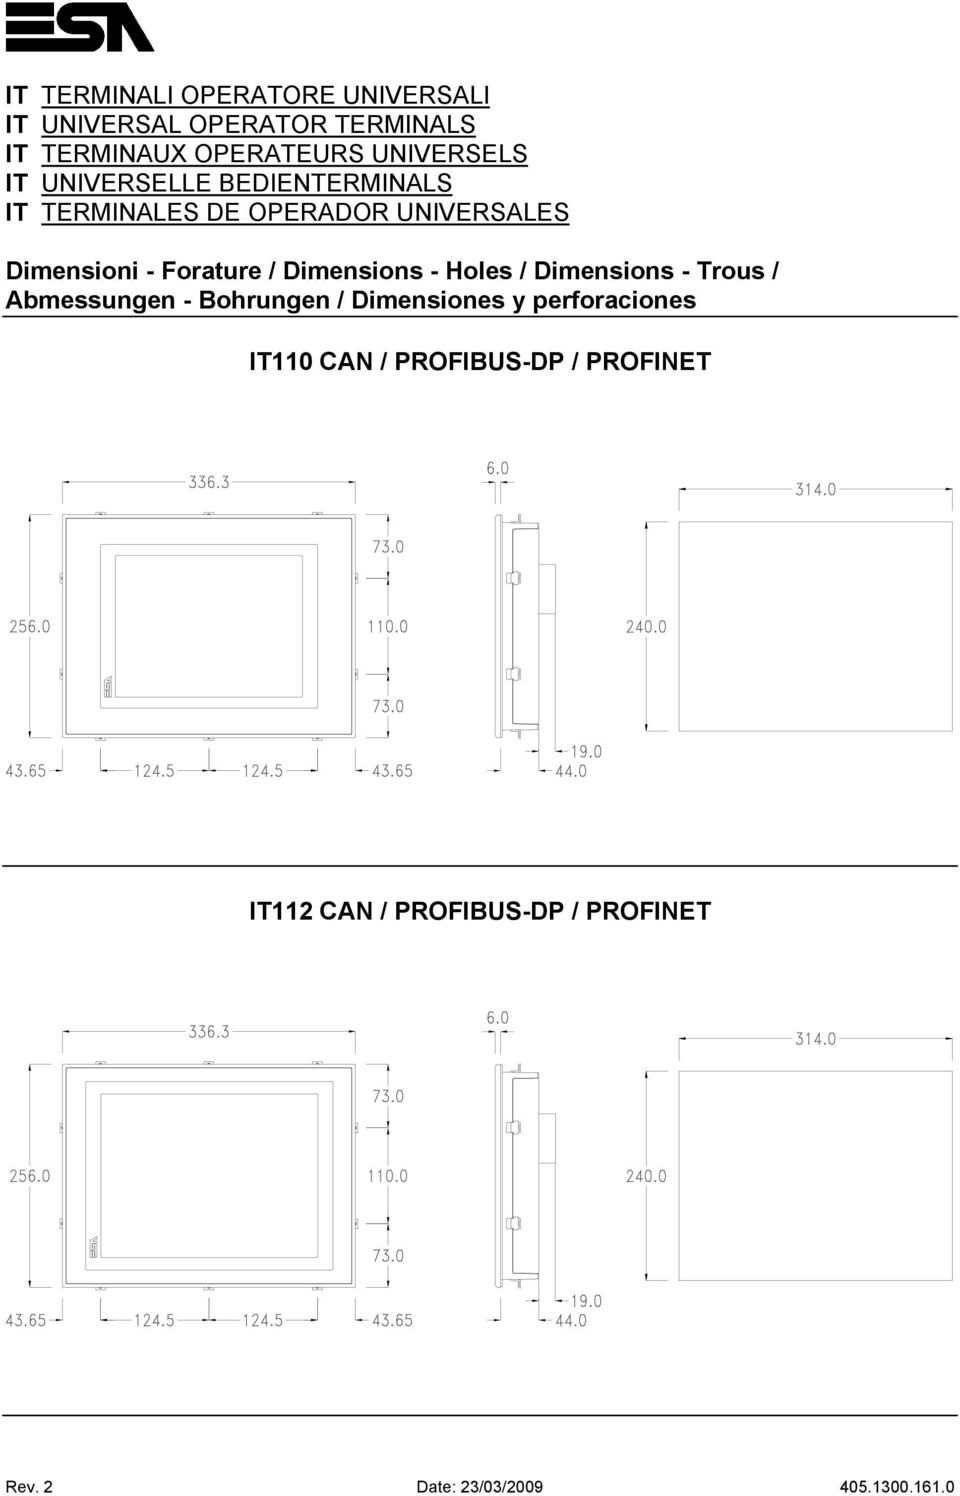 Forature / Dimensions - Holes / Dimensions - Trous / Abmessungen - Bohrungen / Dimensiones y